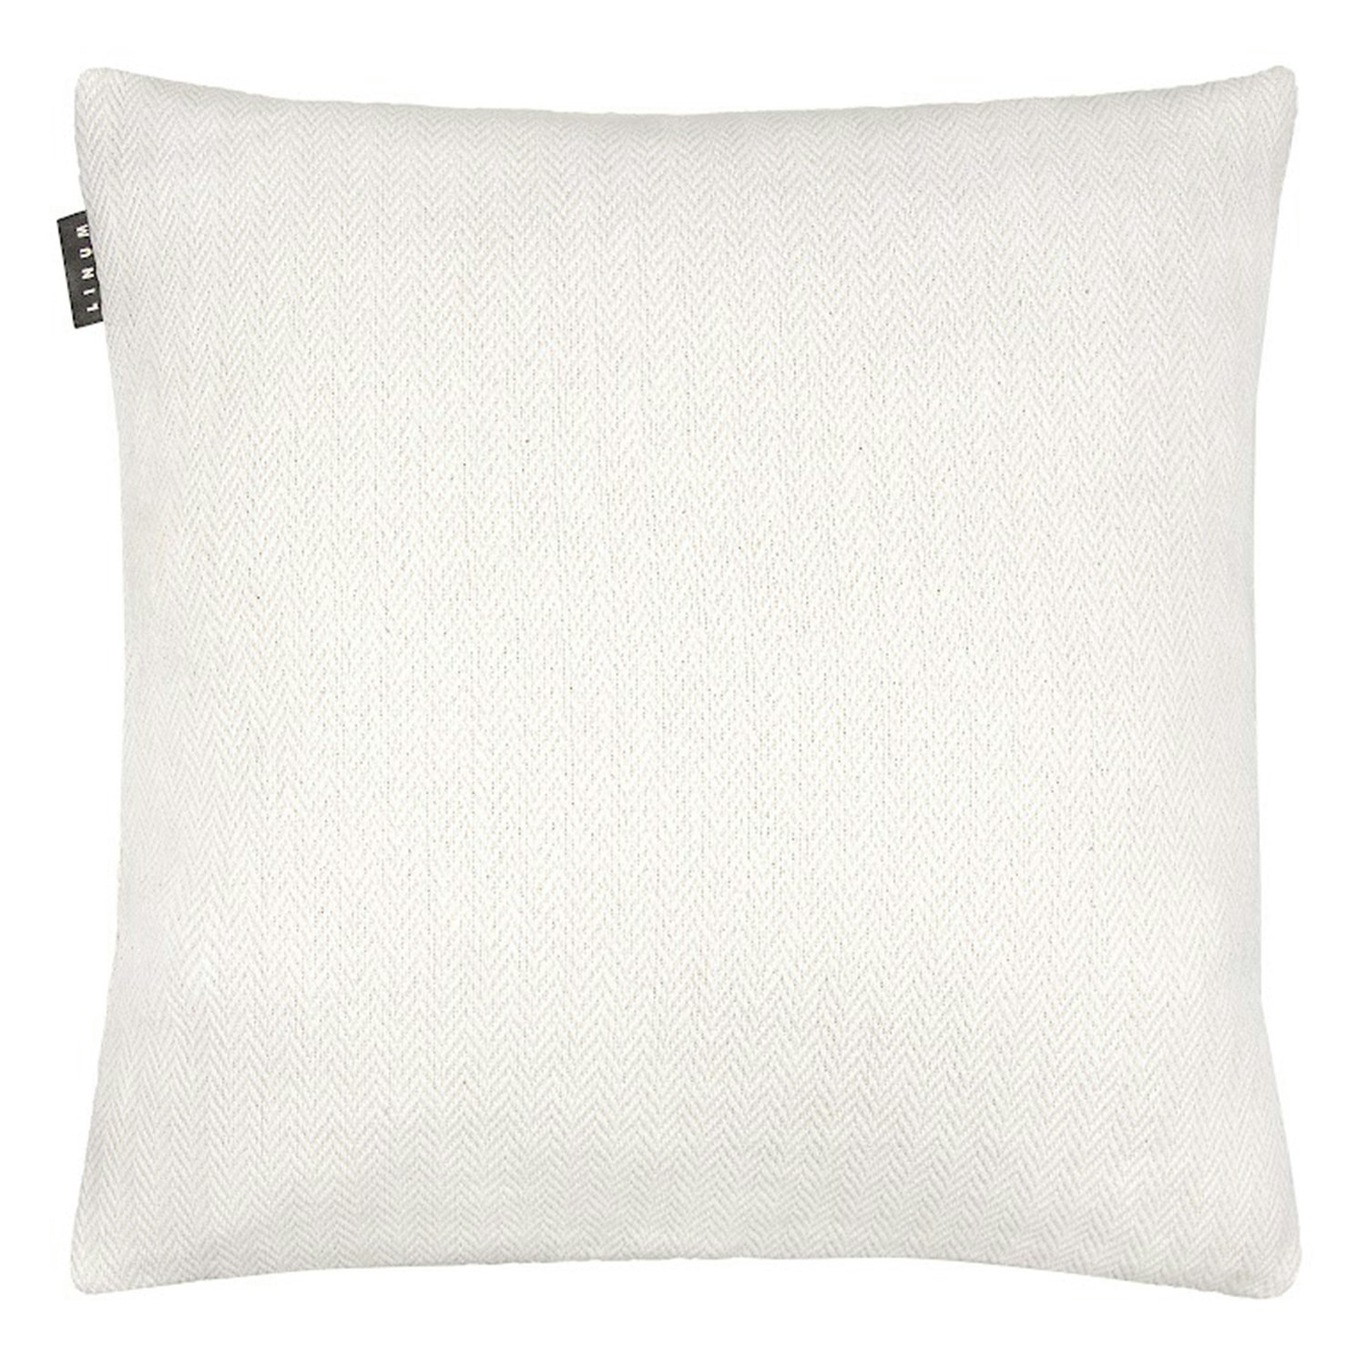 Shepard Tyynynpäällinen 50x50 cm, Valkoinen